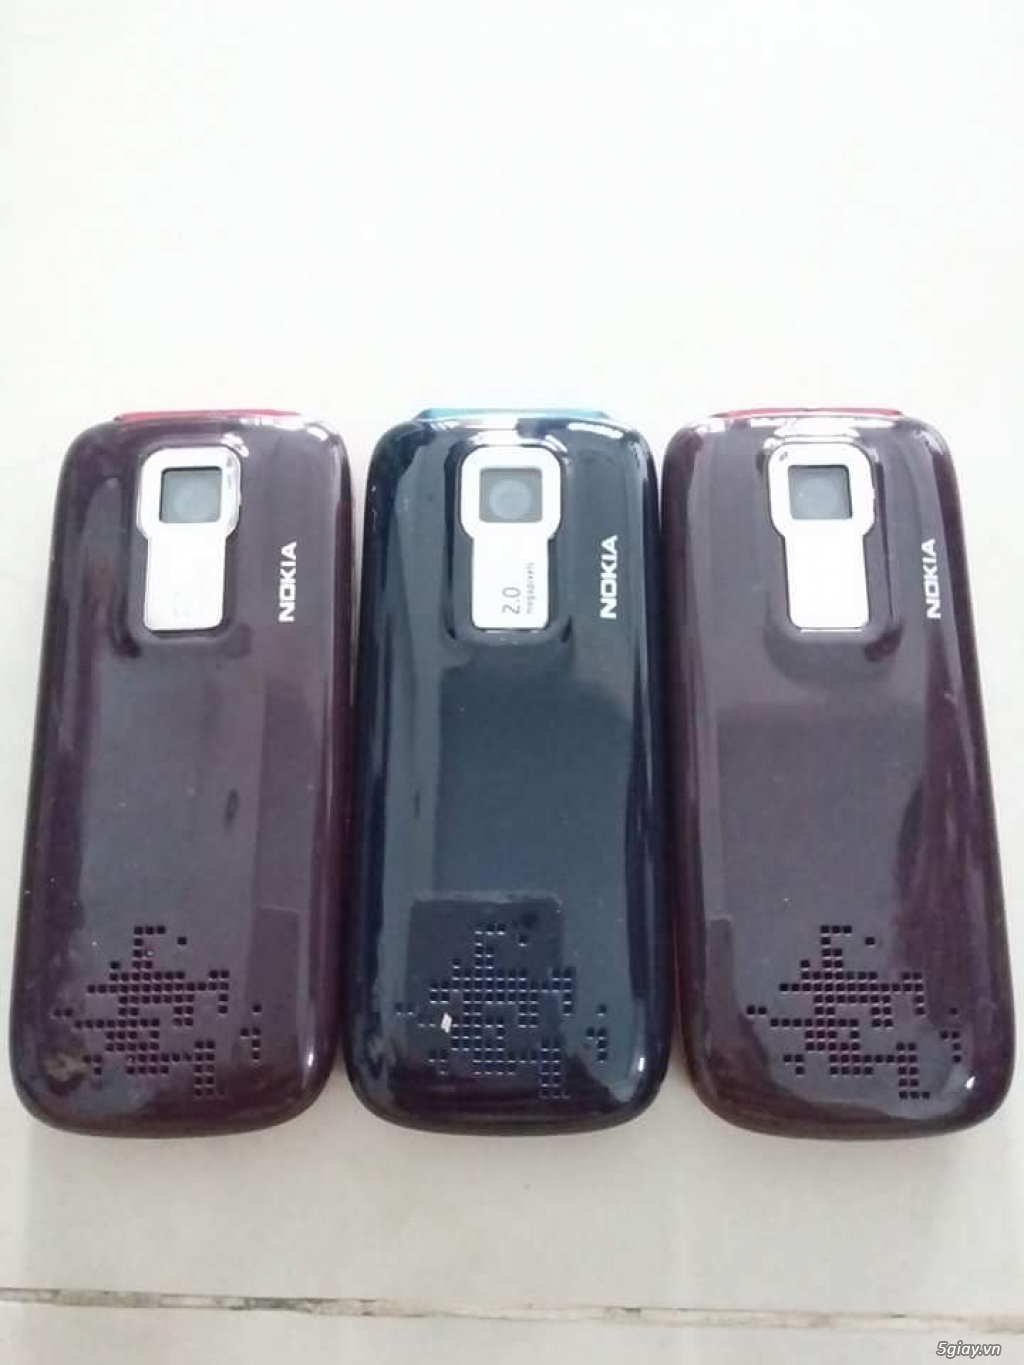 Nokia Chữa Cháy Bao Zin Đẹp Rẻ Bền Dành Cho SV-HS - 1